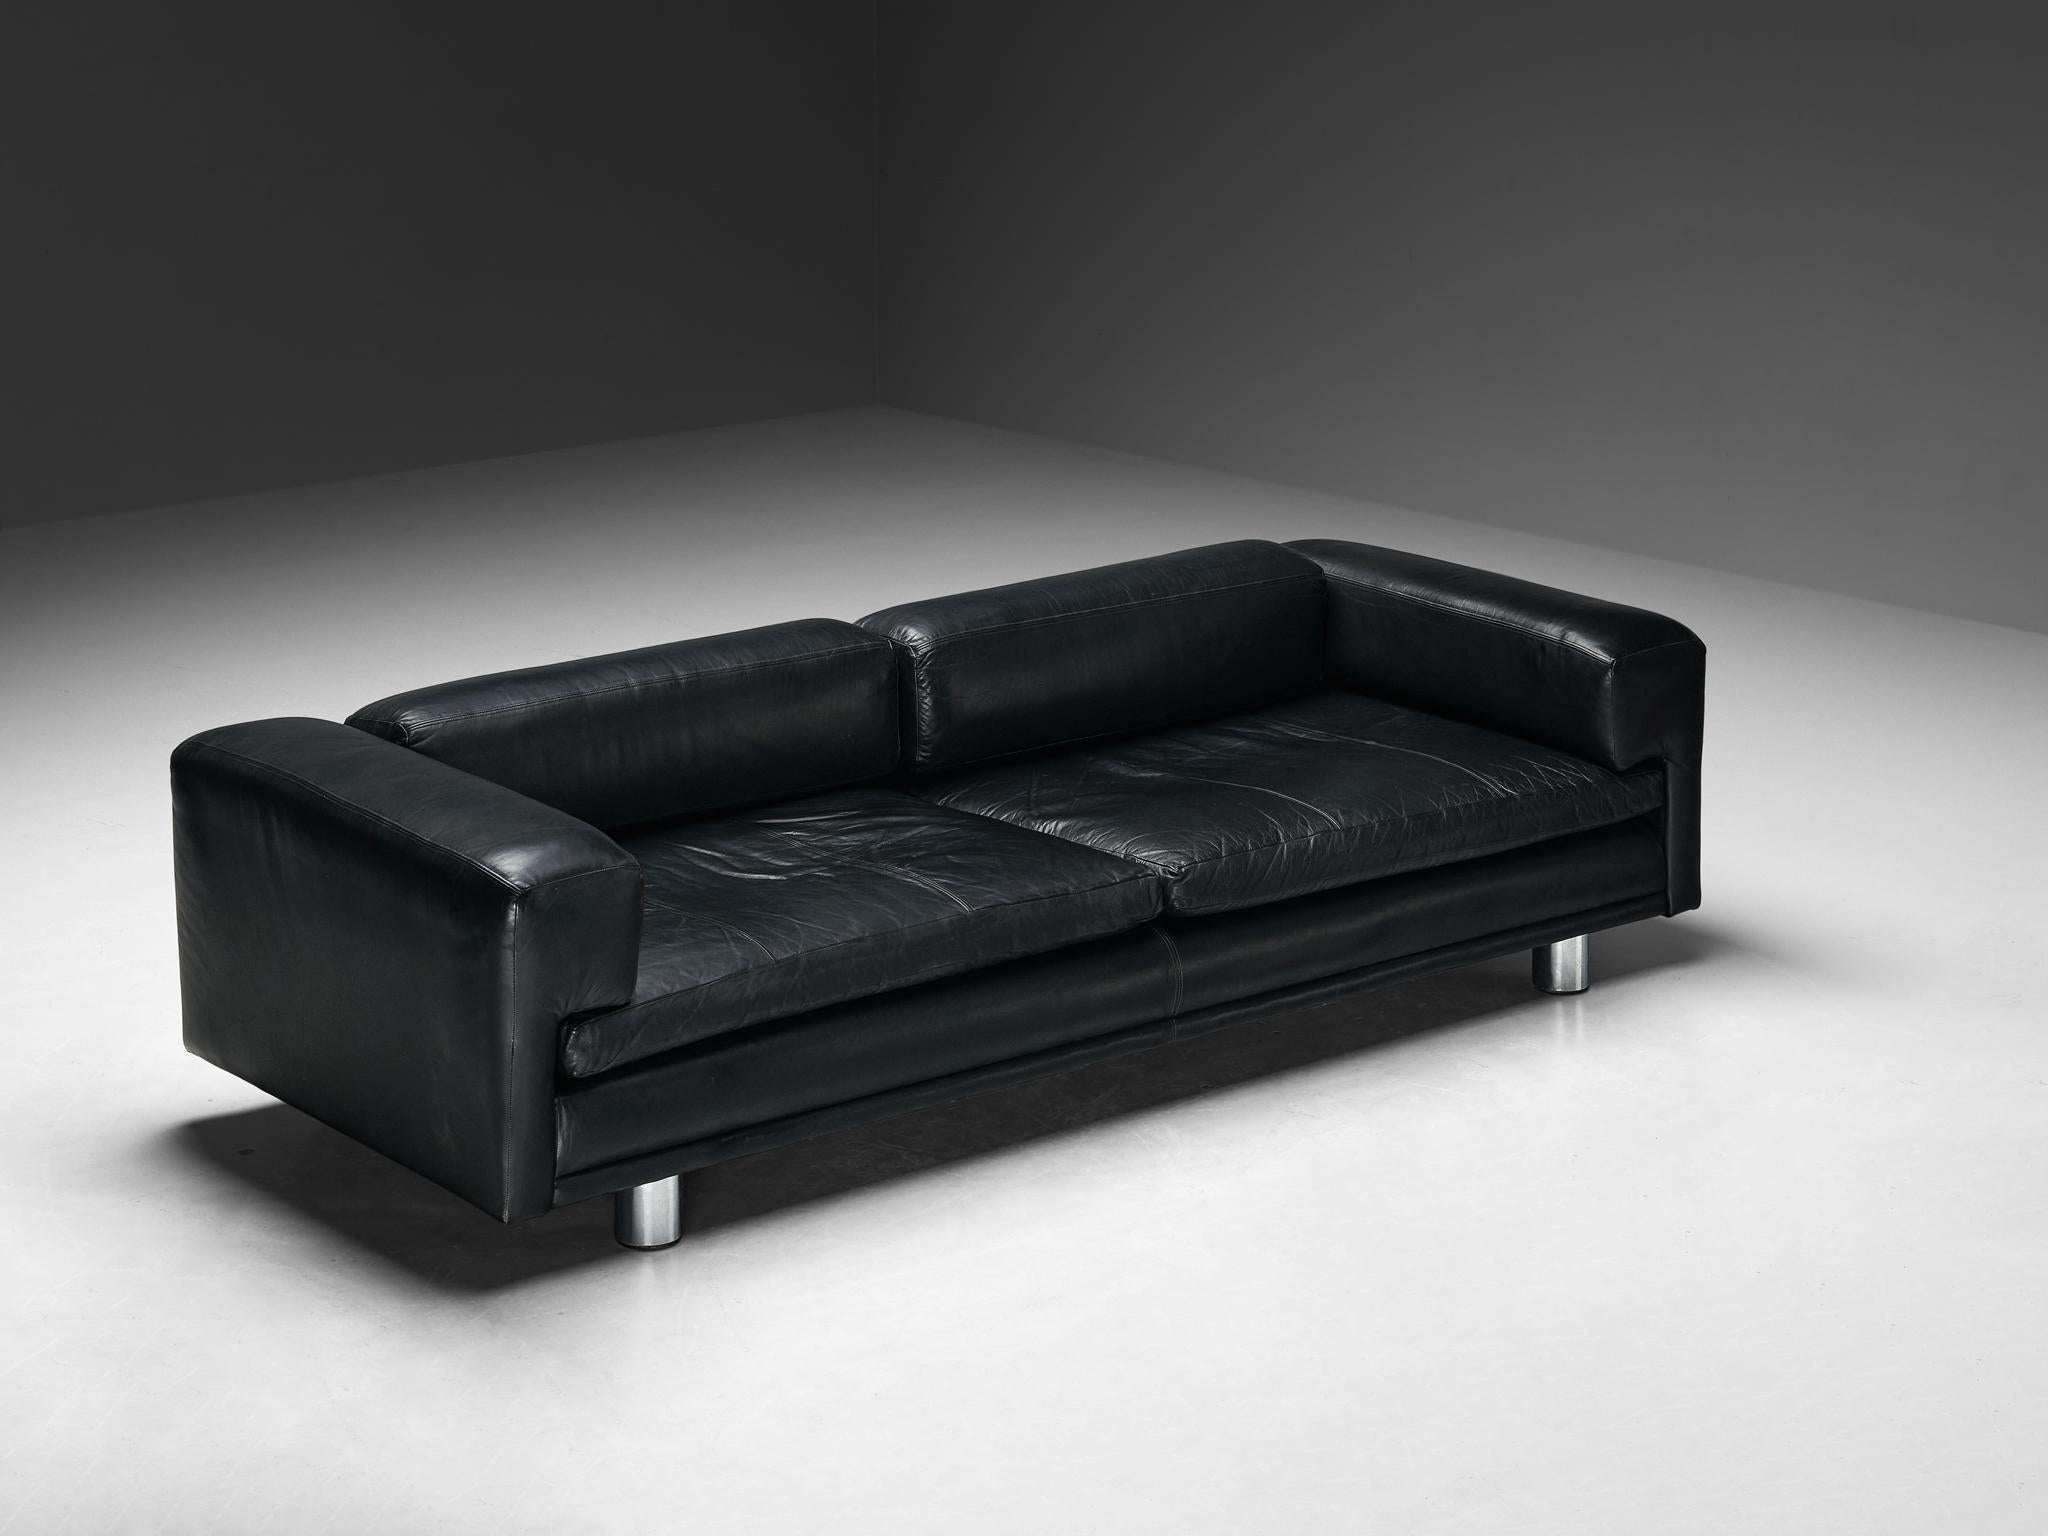 Howard Keith pour HK Furniture, canapé 'Diplomat', cuir, acier chromé, Royaume-Uni, années 1970

Le canapé 